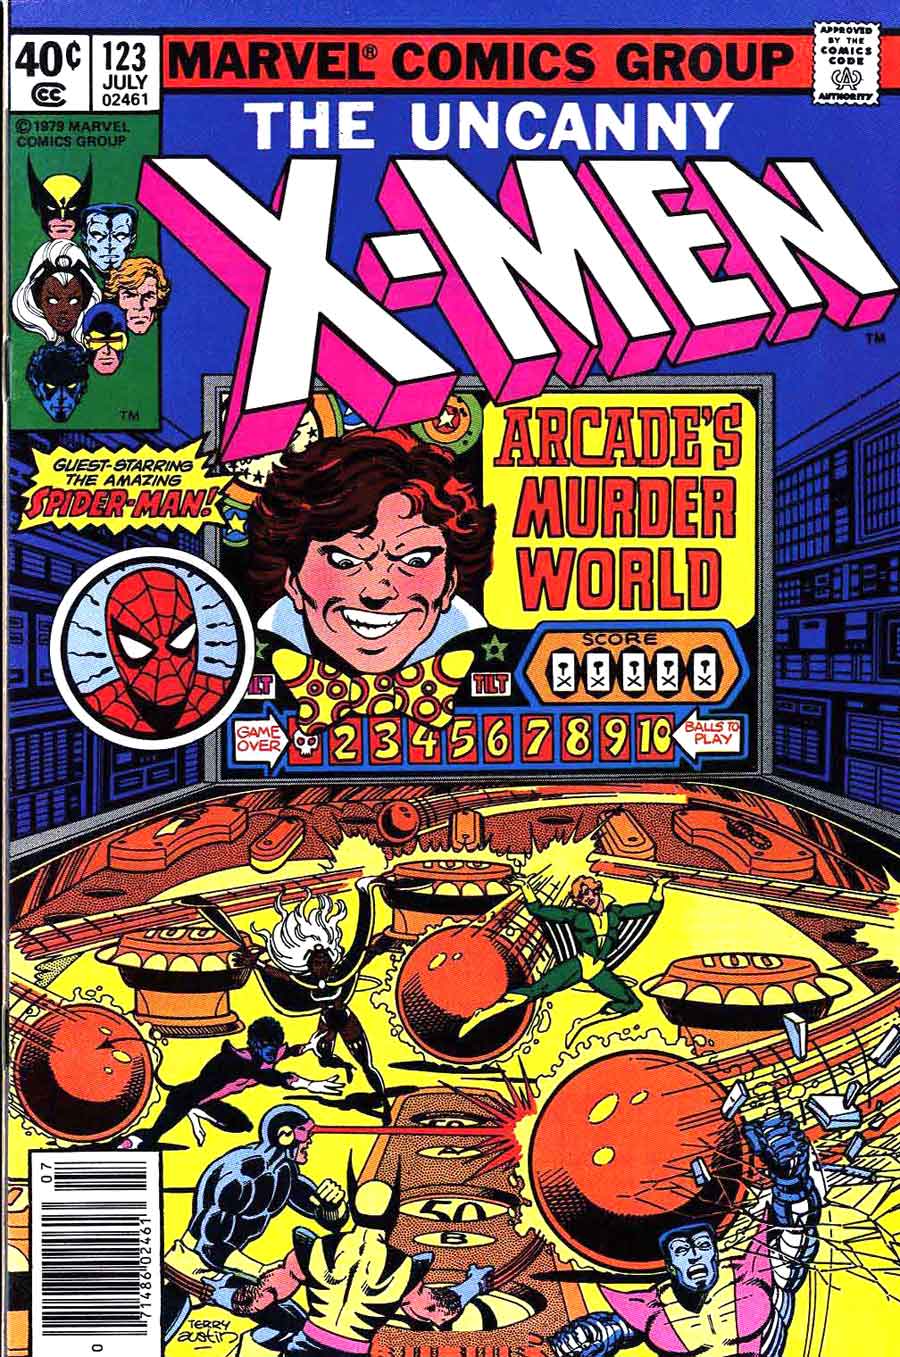 X-men v1 #123 marvel comic book cover art by John Byrne